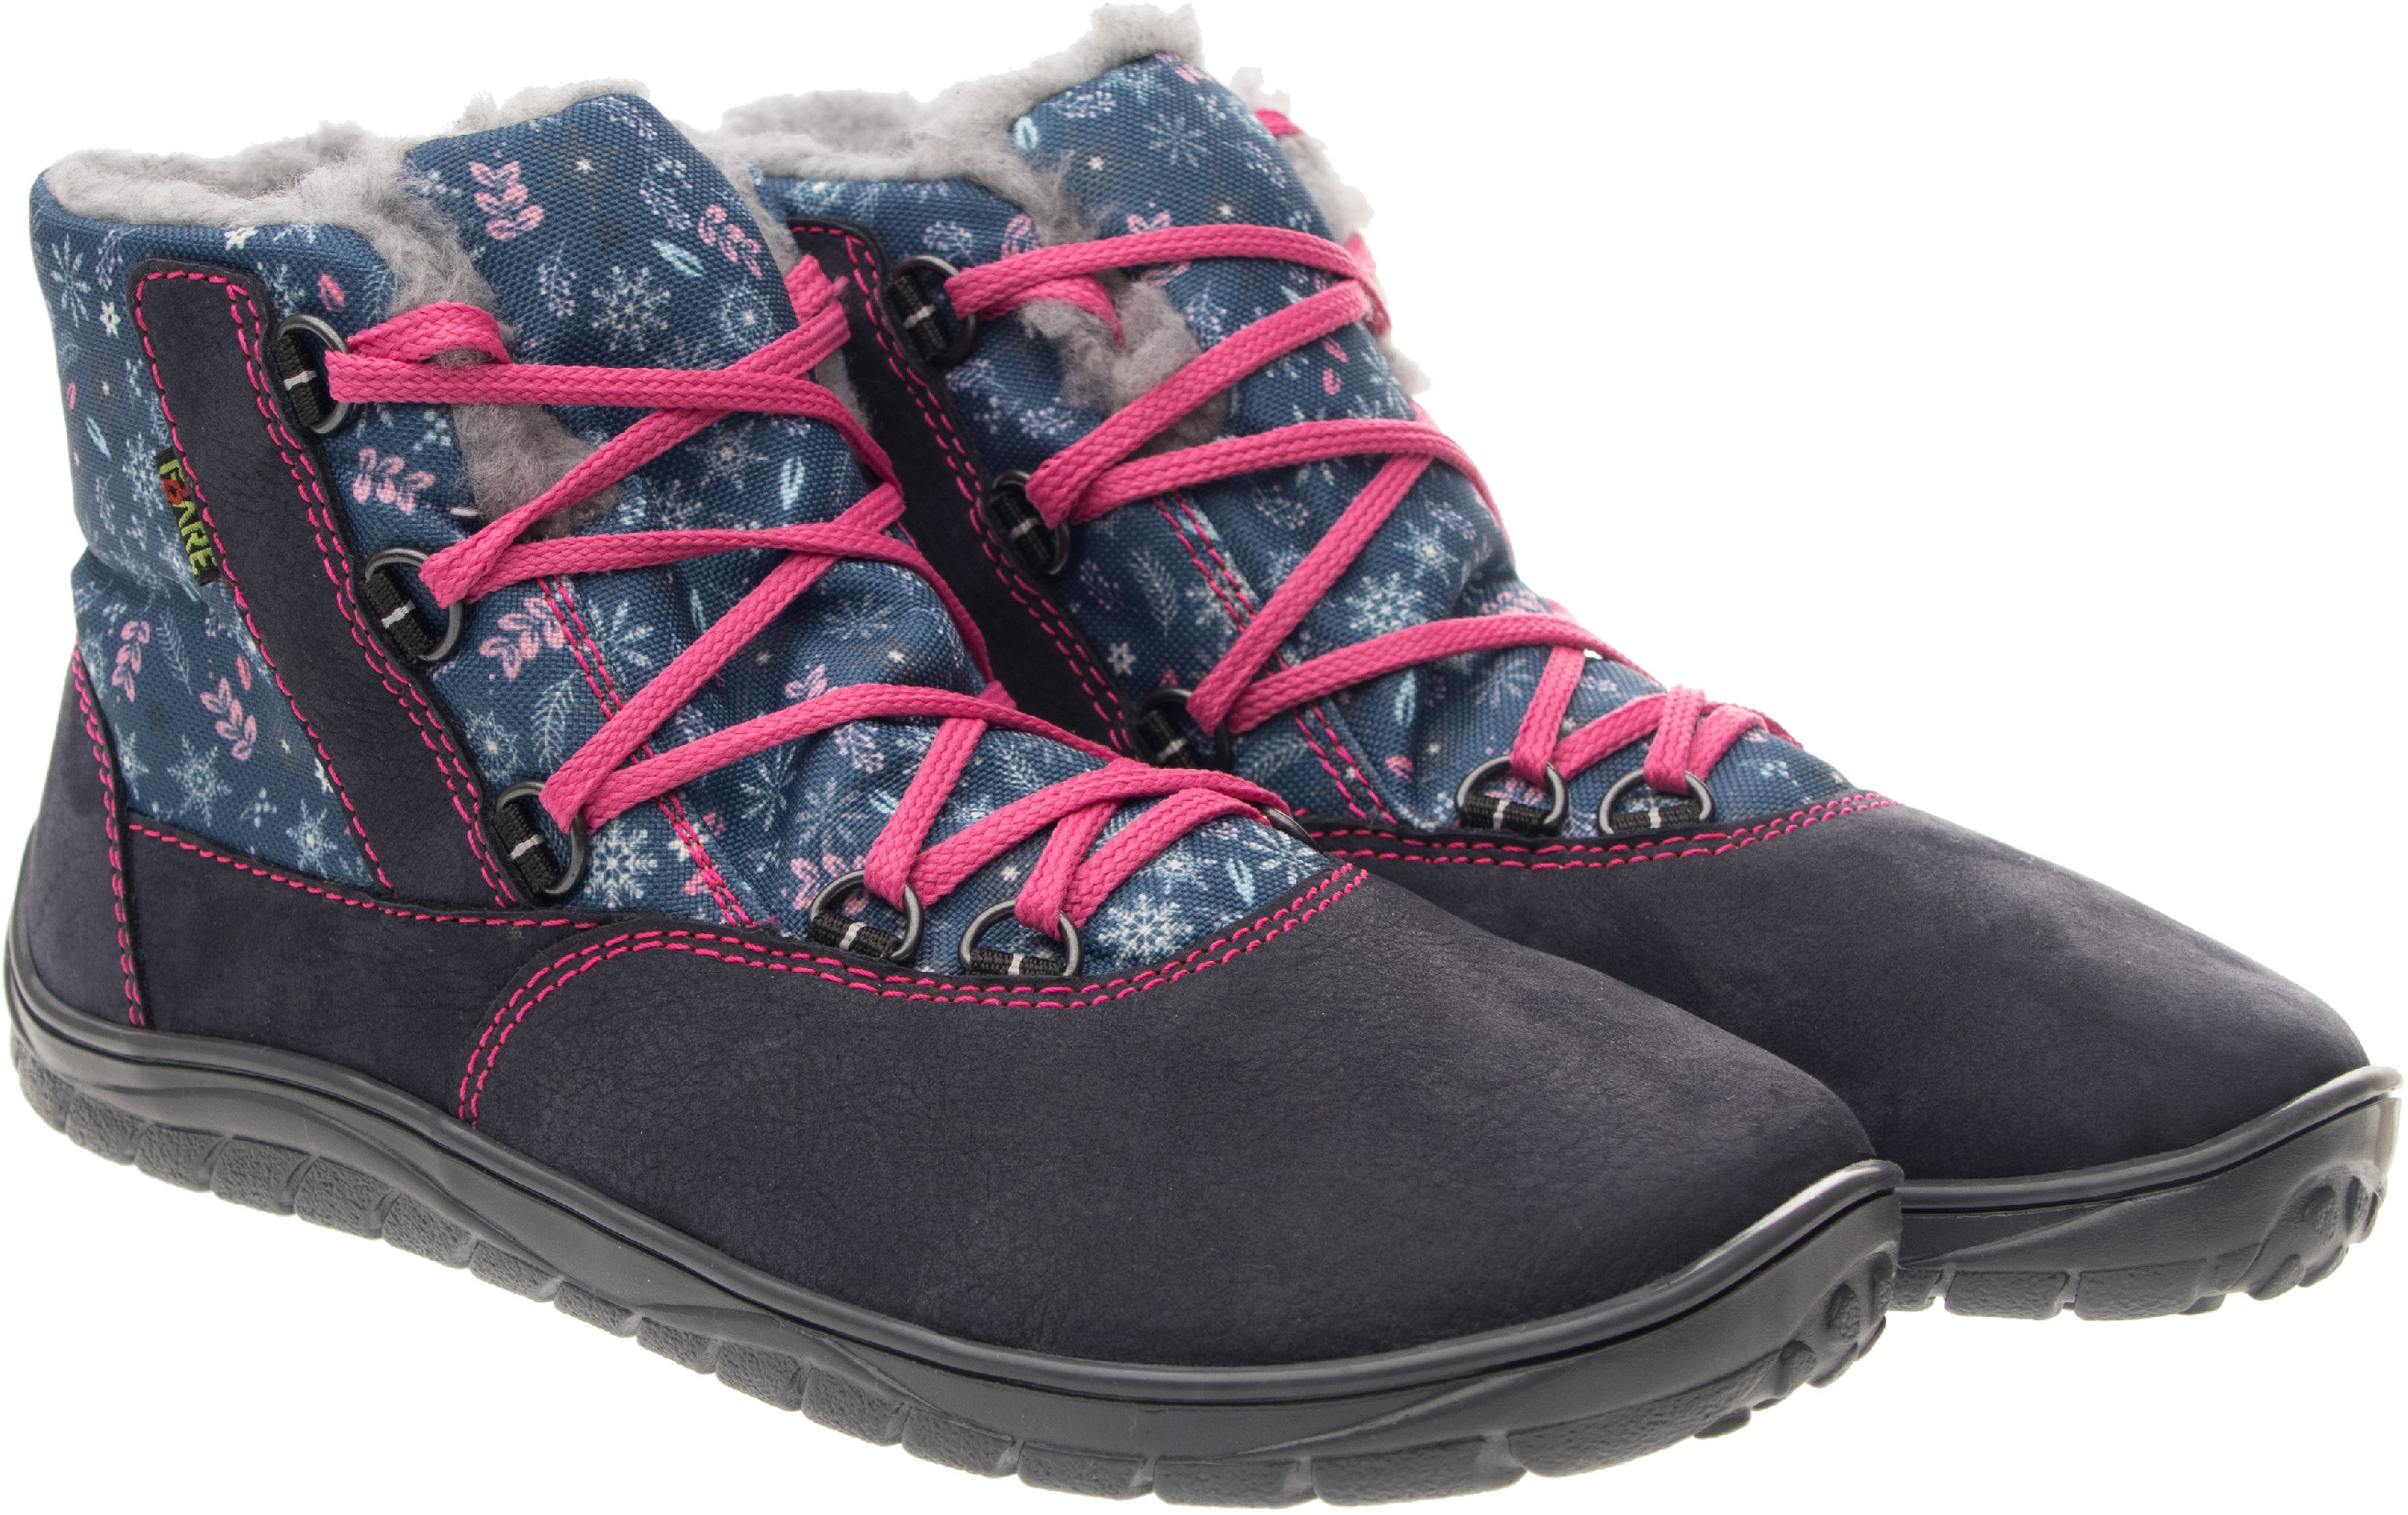 Fare Bare unisex zimní nepromokavé boty B5643201 Velikost obuvi: 36